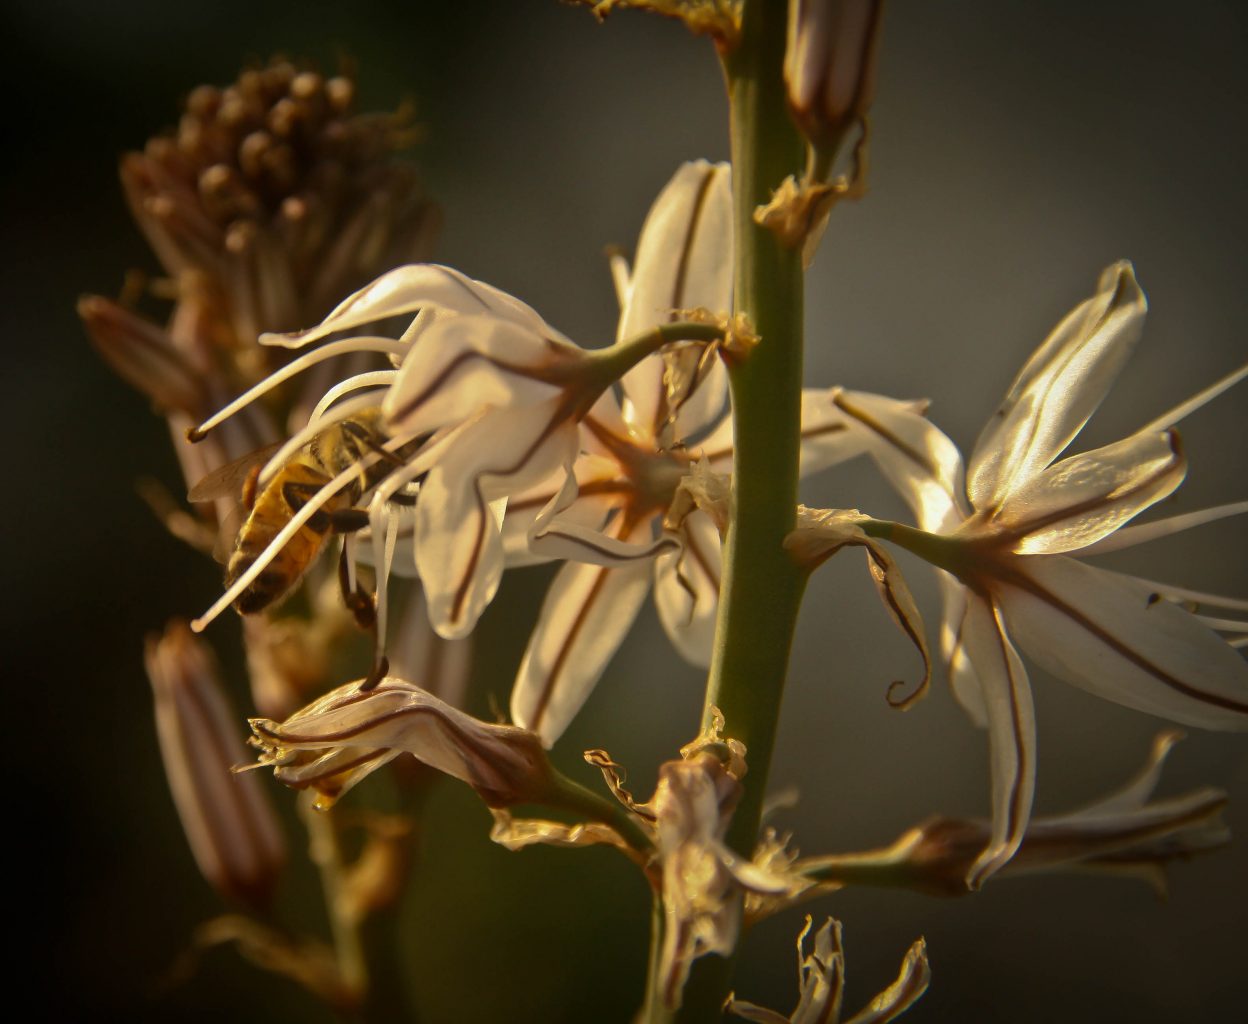 עירית גדולה (Asphodelus ramosus). צמח נפוץ מאוד בחורש. פקעותיו משמשים לטיפול במגוון בעיות רפואיות